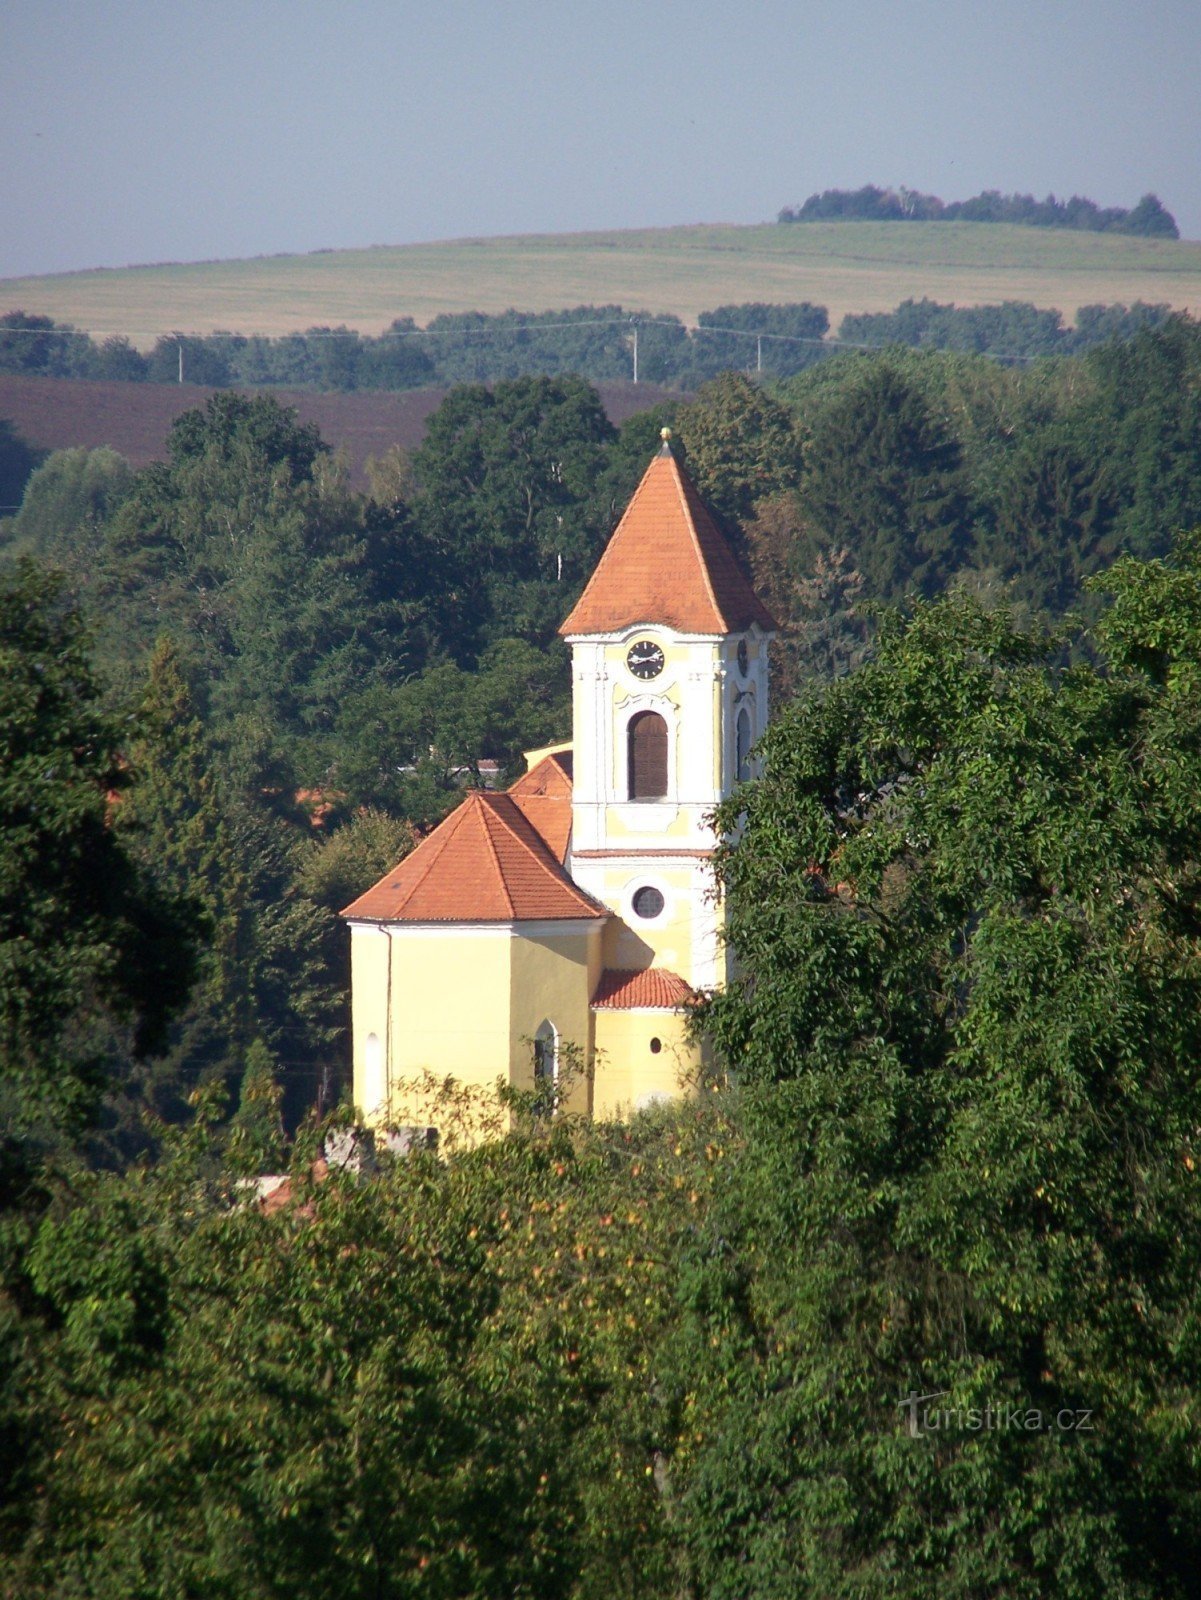 Église de St. Šimon et Judy à Bystřice près de Benešov